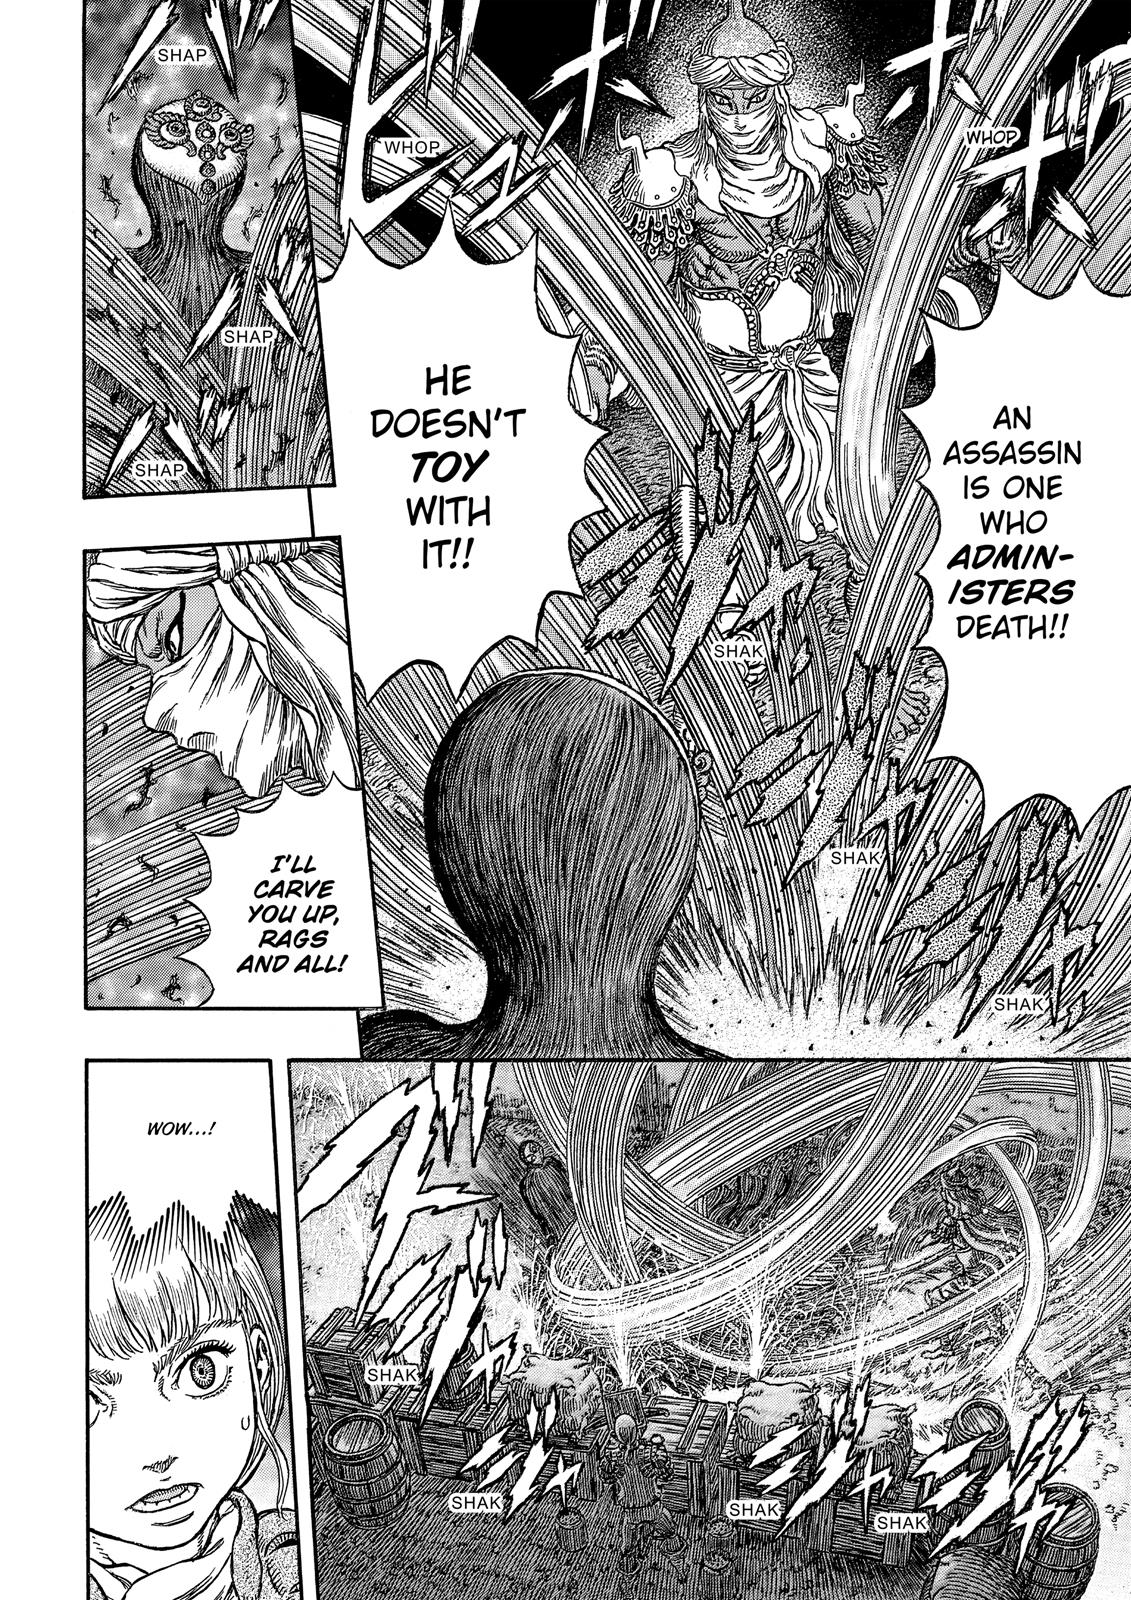 Berserk Manga Chapter 340 image 09